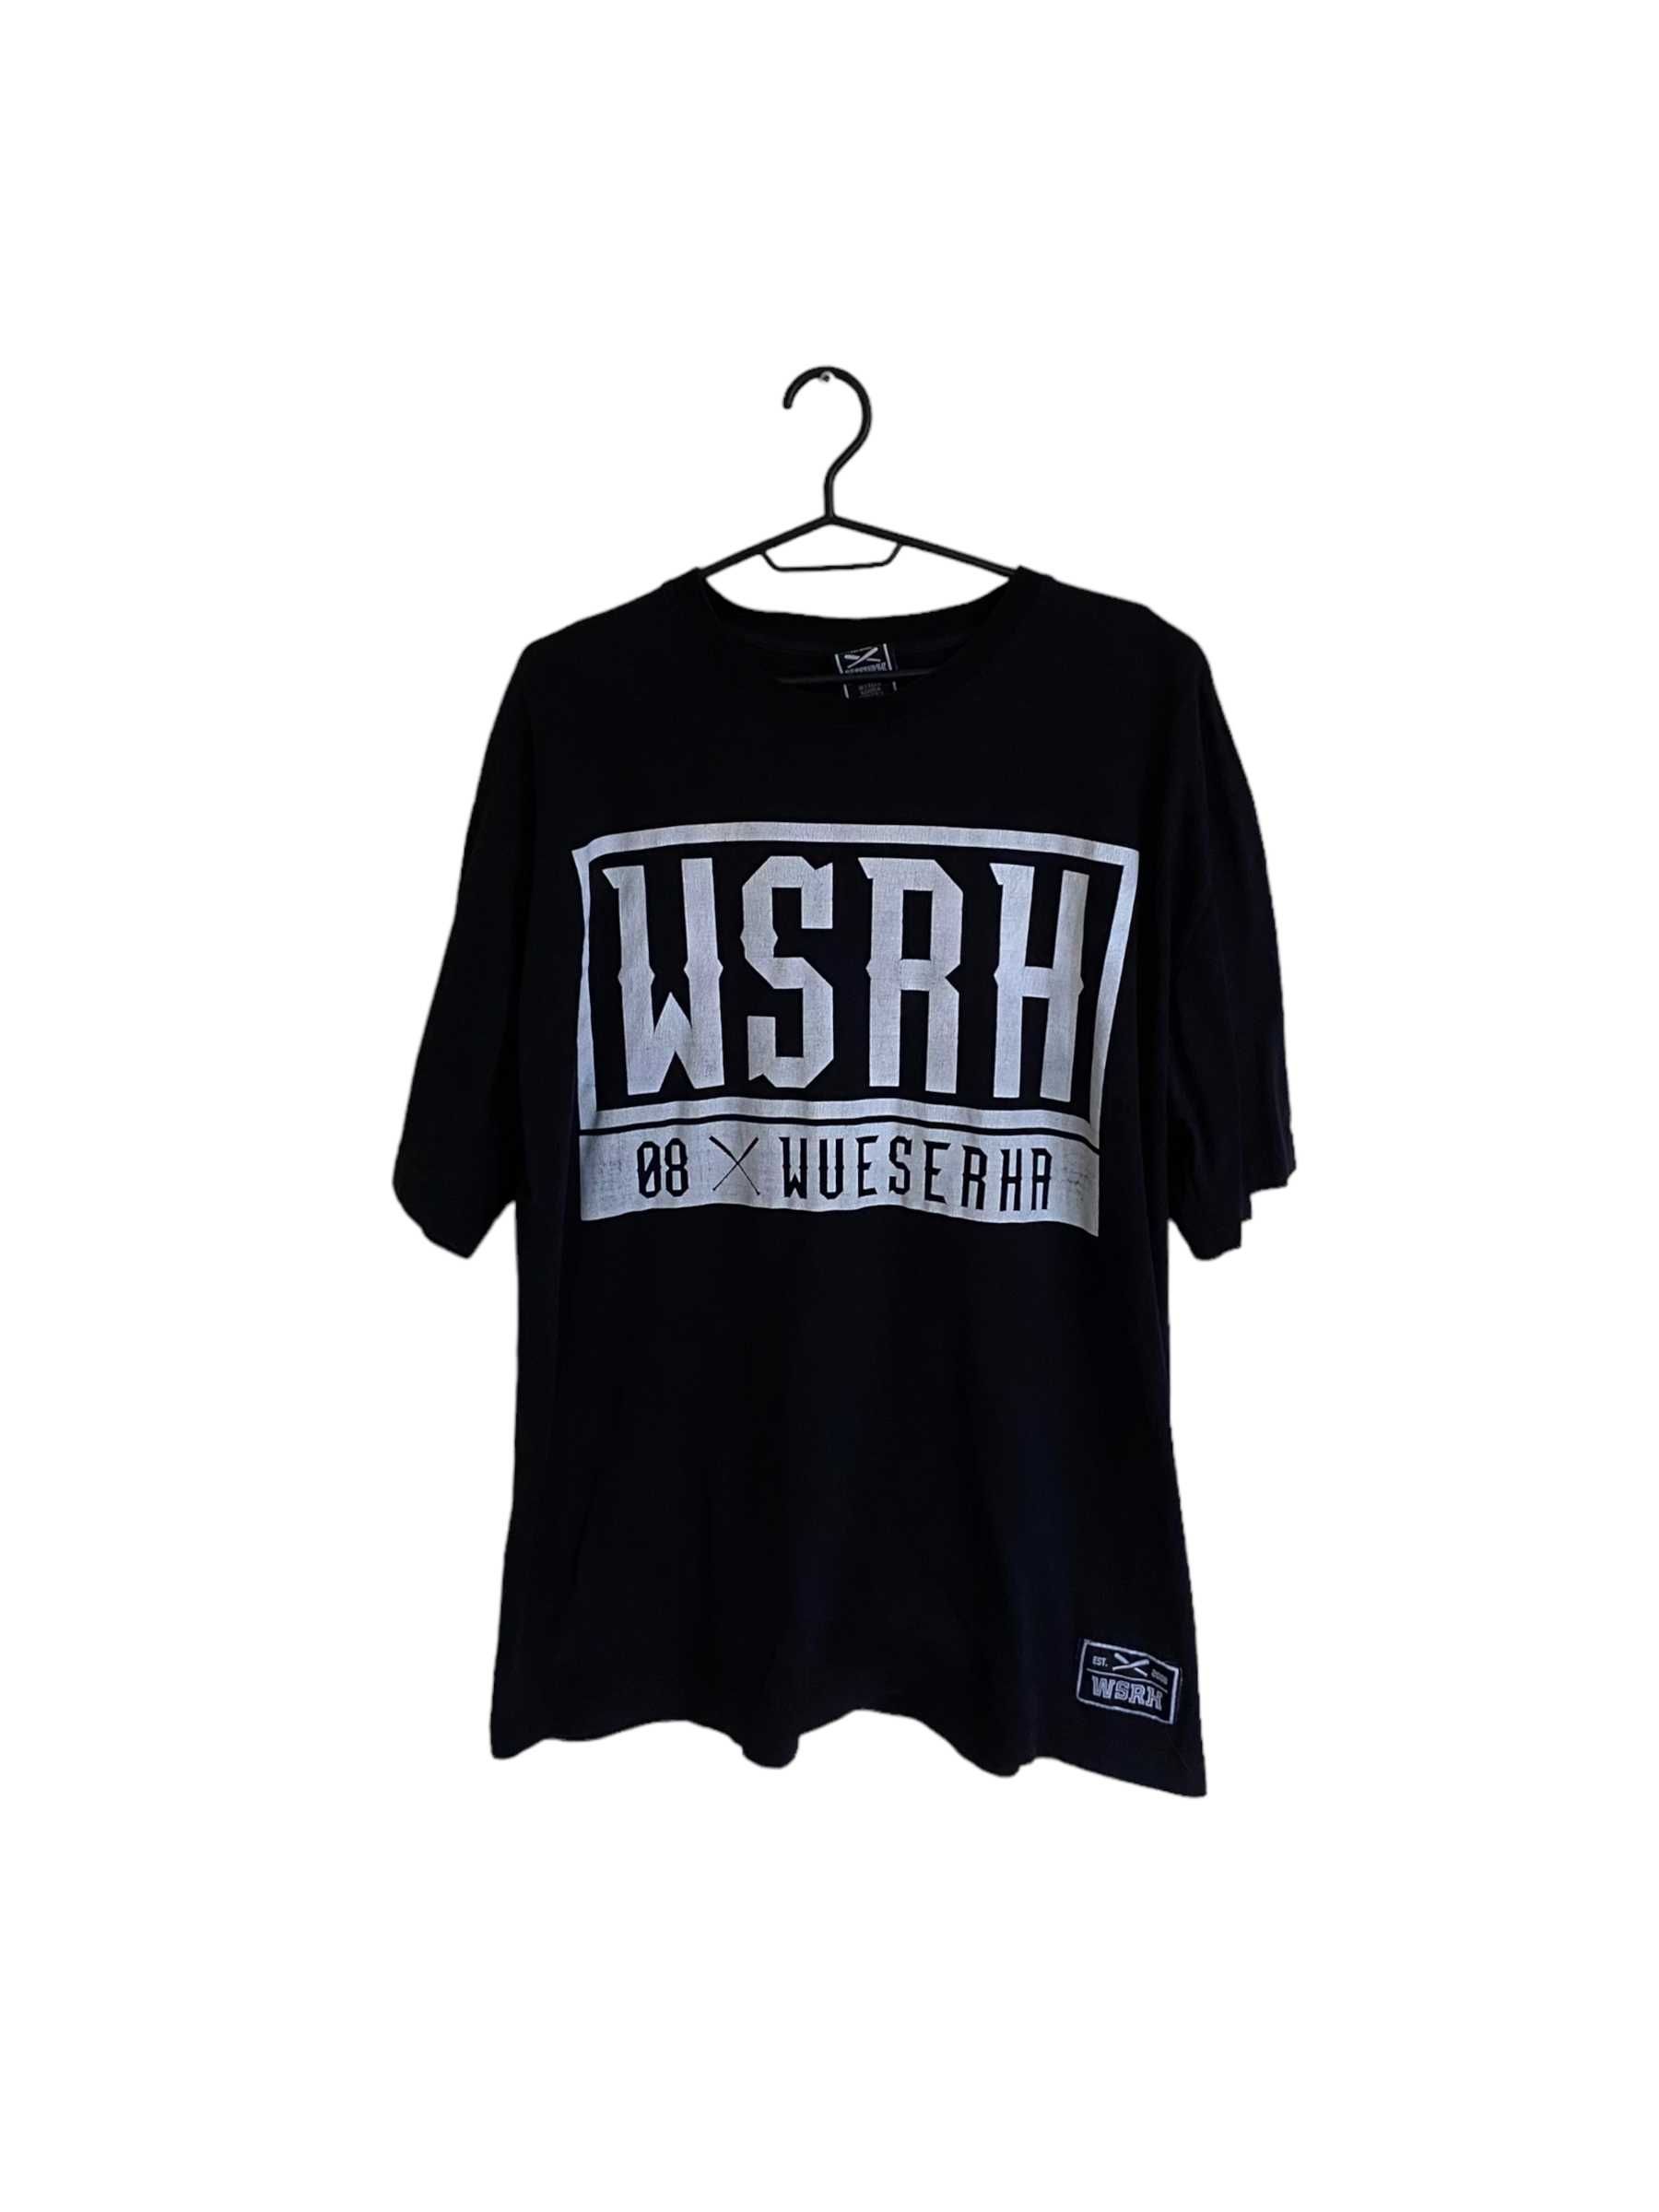 WSRH t-shirt, rozmiar XXL, stan dobry